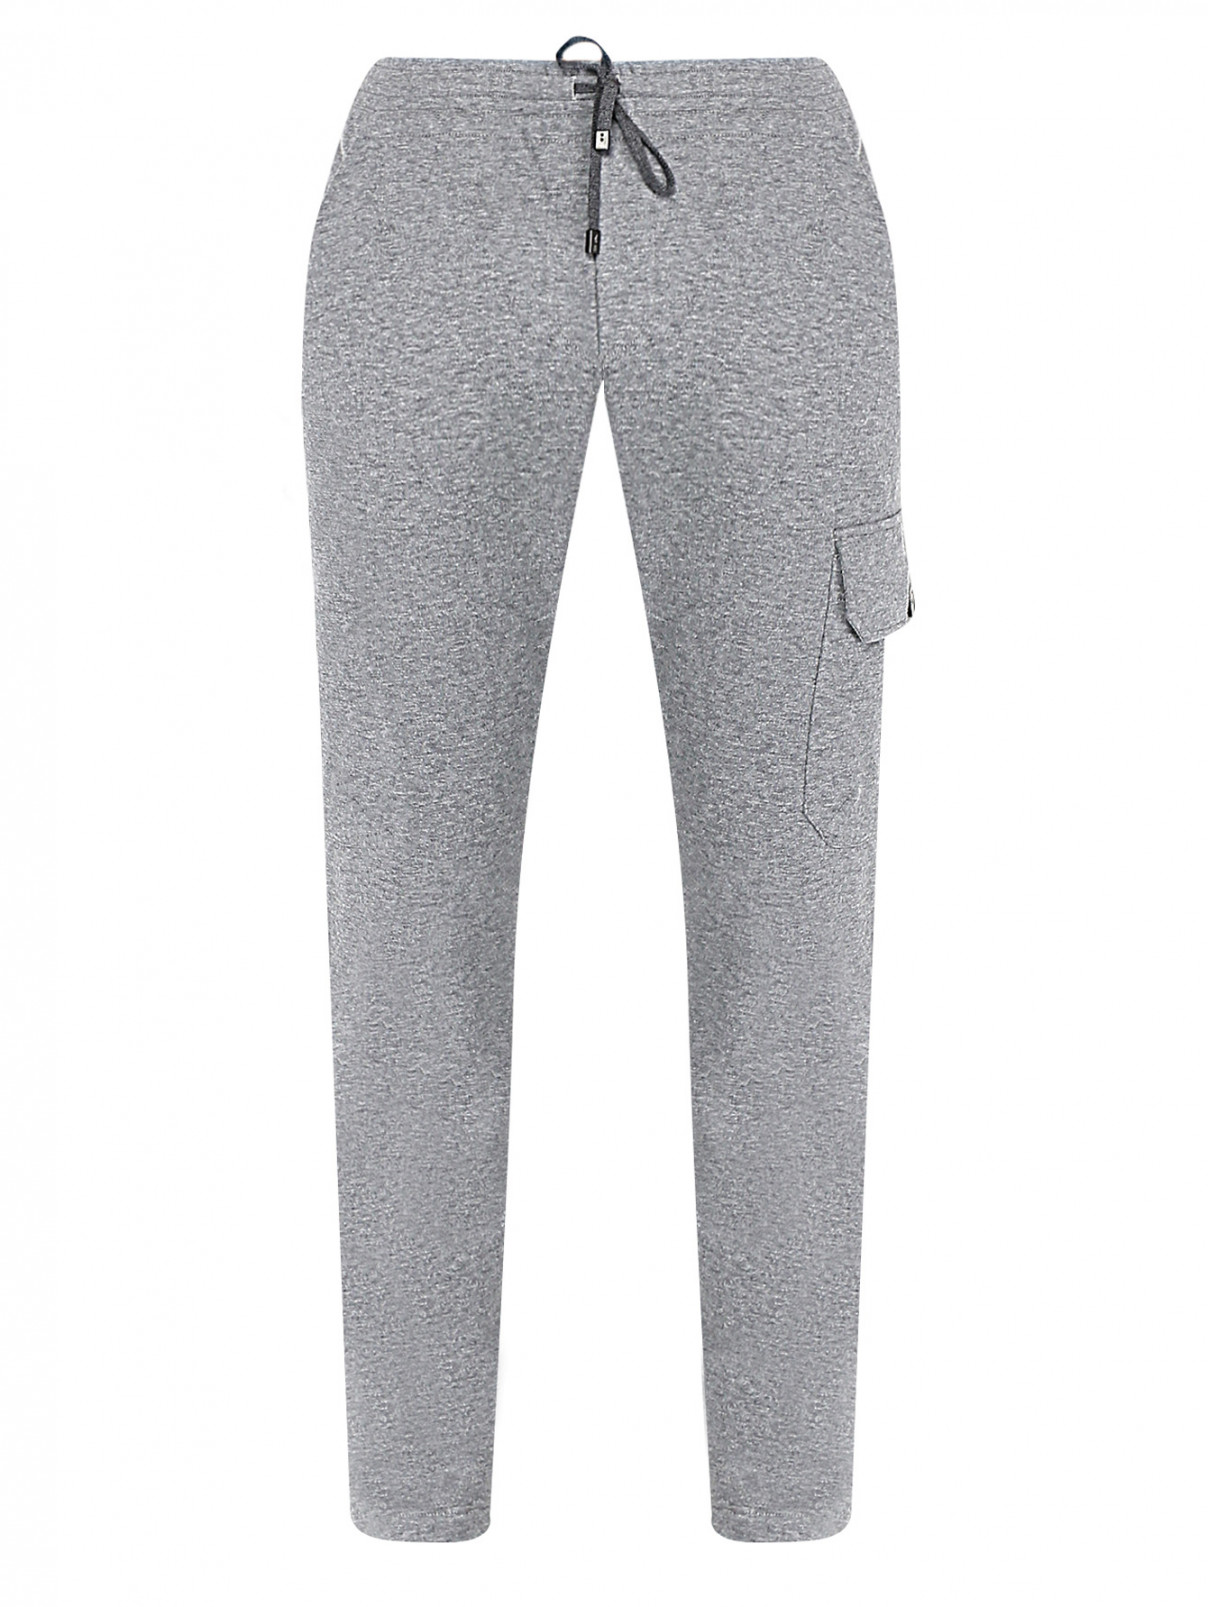 Трикотажные брюки из хлопка с карманами Capobianco  –  Общий вид  – Цвет:  Серый